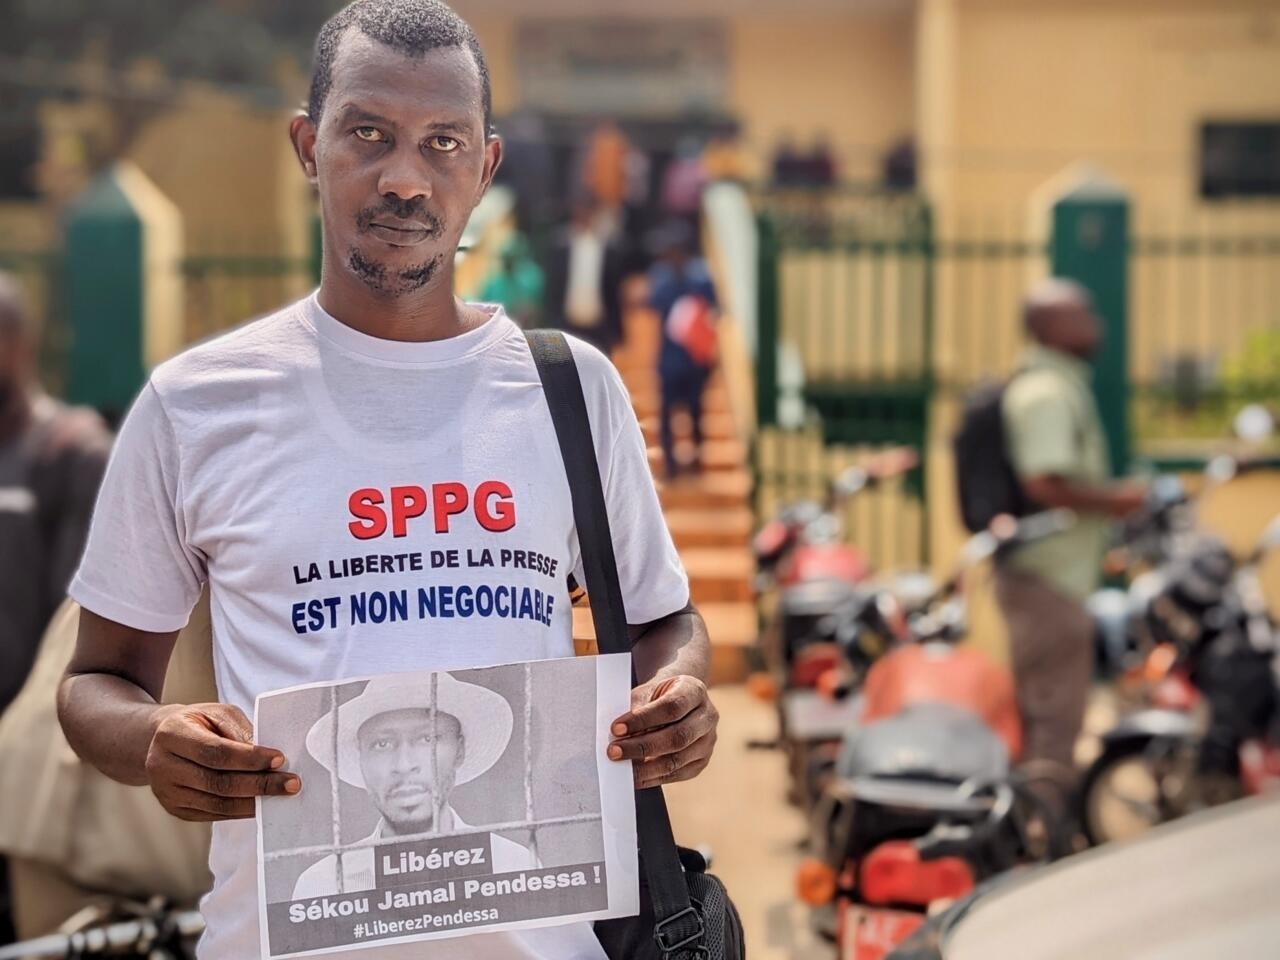 Guinée: le journaliste Sékou Jamal Pendessa libéré, les syndicats suspendent la grève